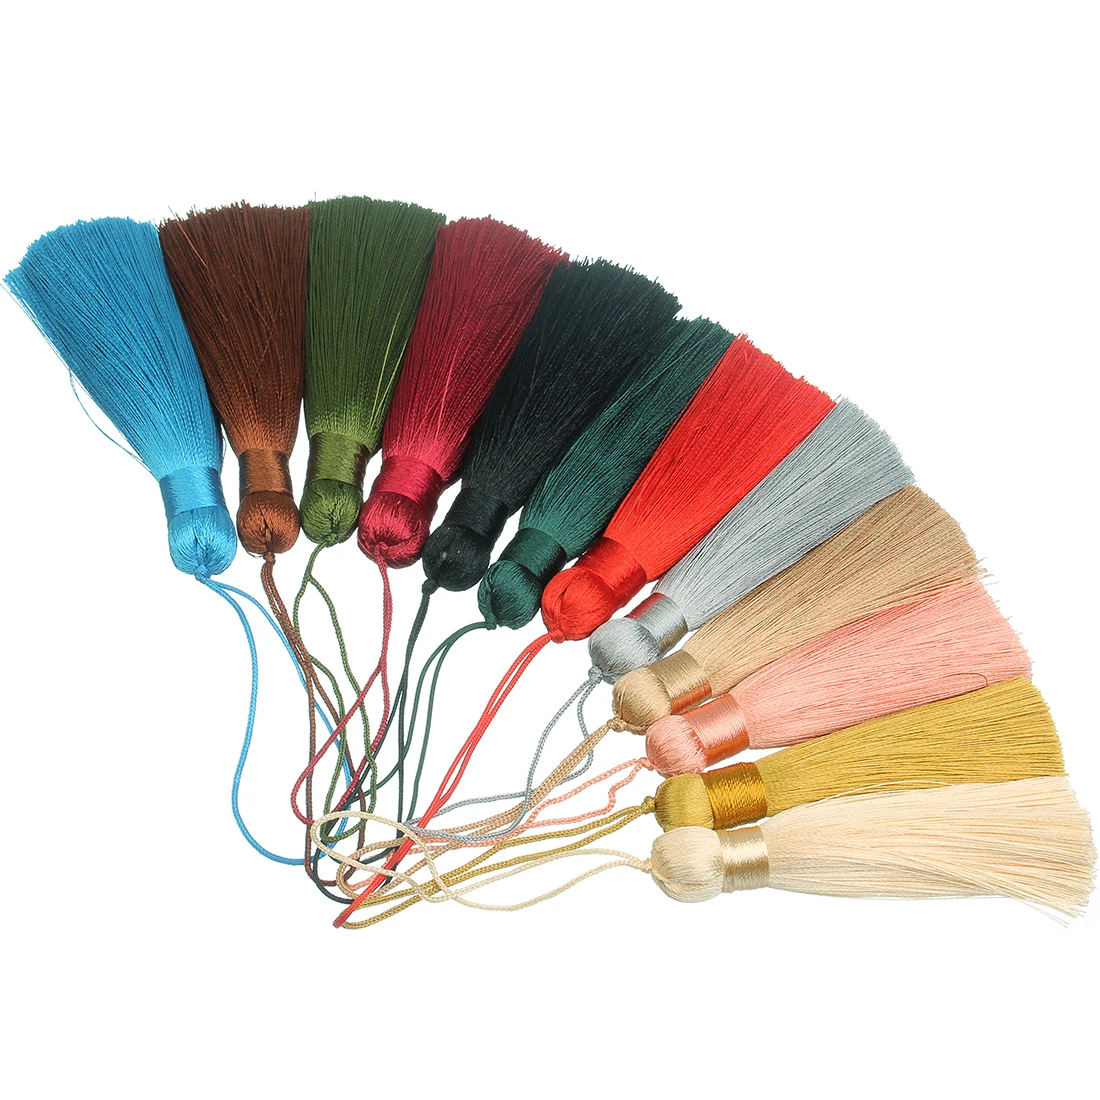 

6 шт. 82 мм разные цвета Закладка кисточки красочные мягкие поделки для Diy шитья шторы сумка брелок